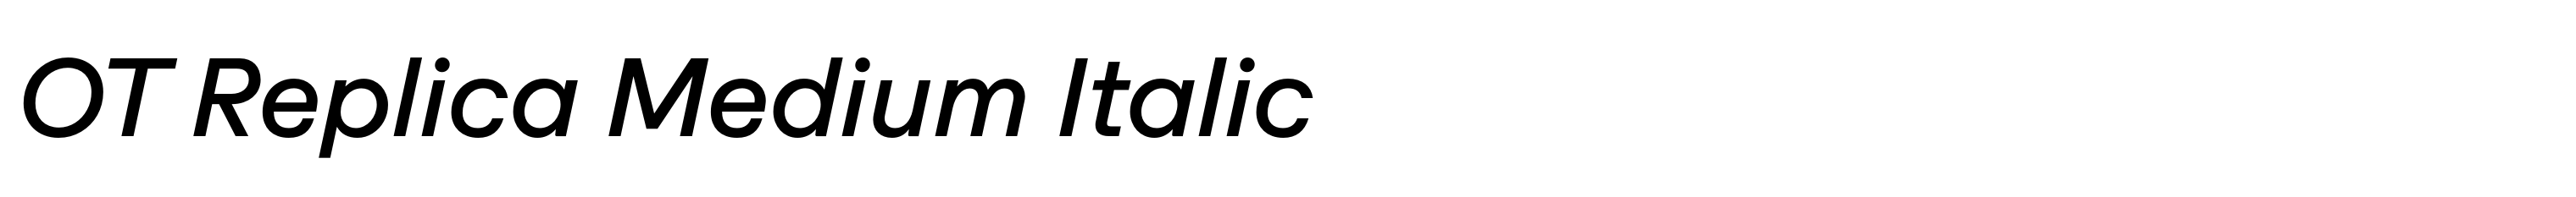 OT Replica Medium Italic